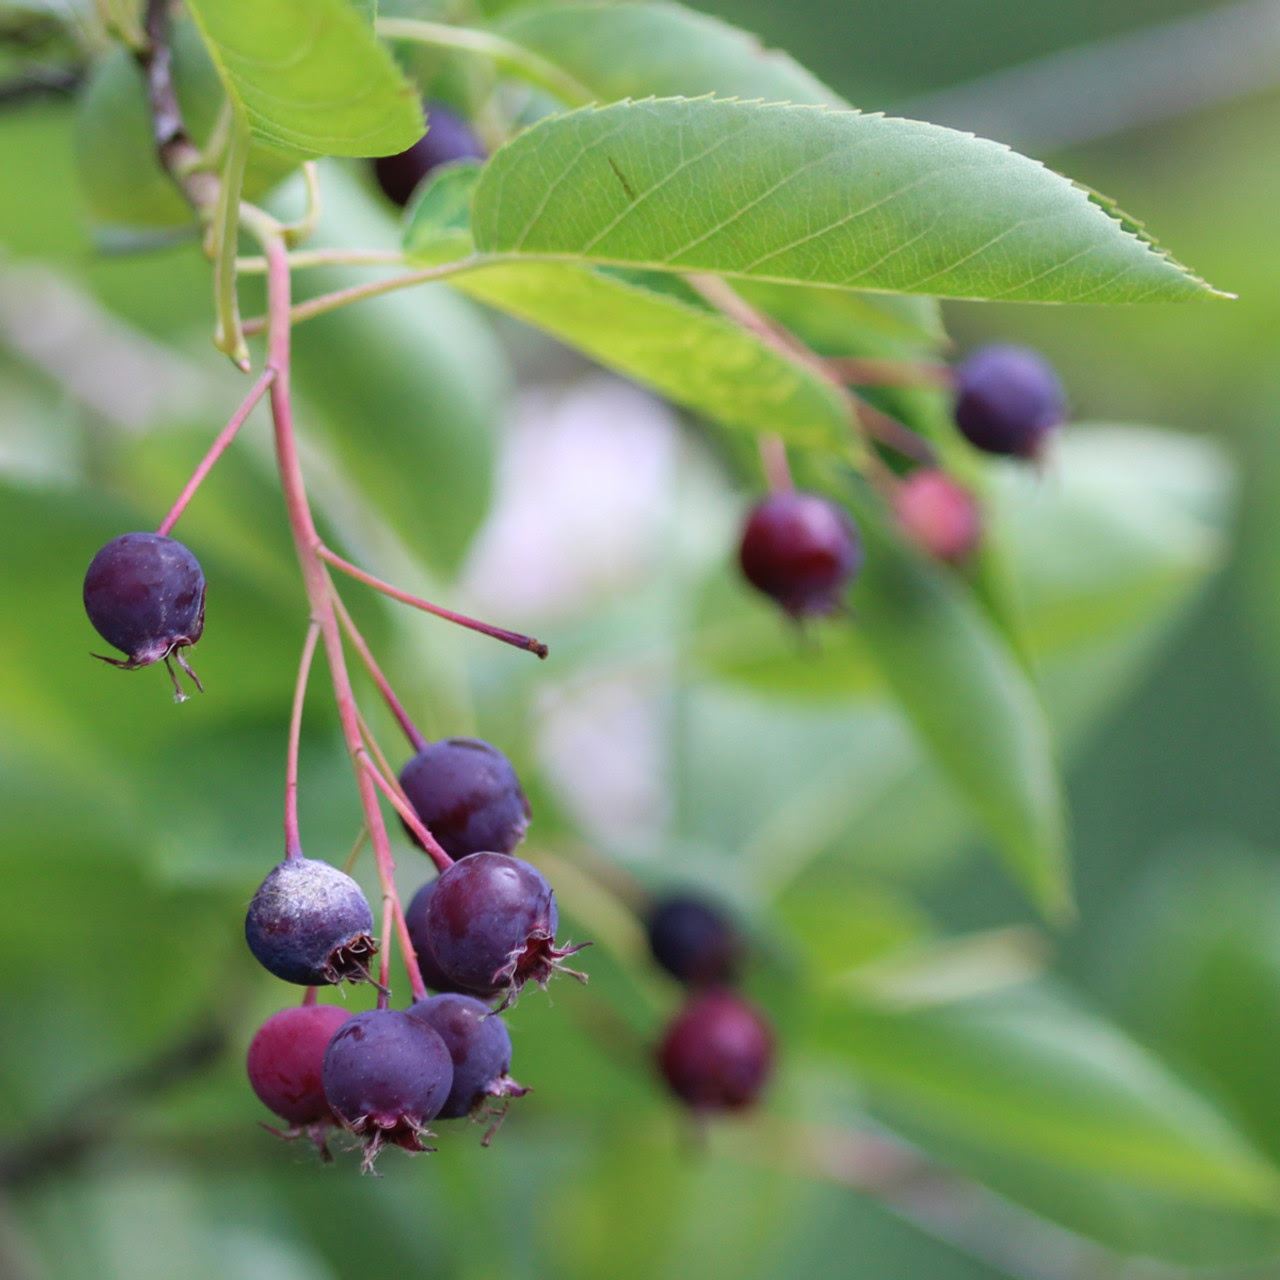 Serviceberry tree berries